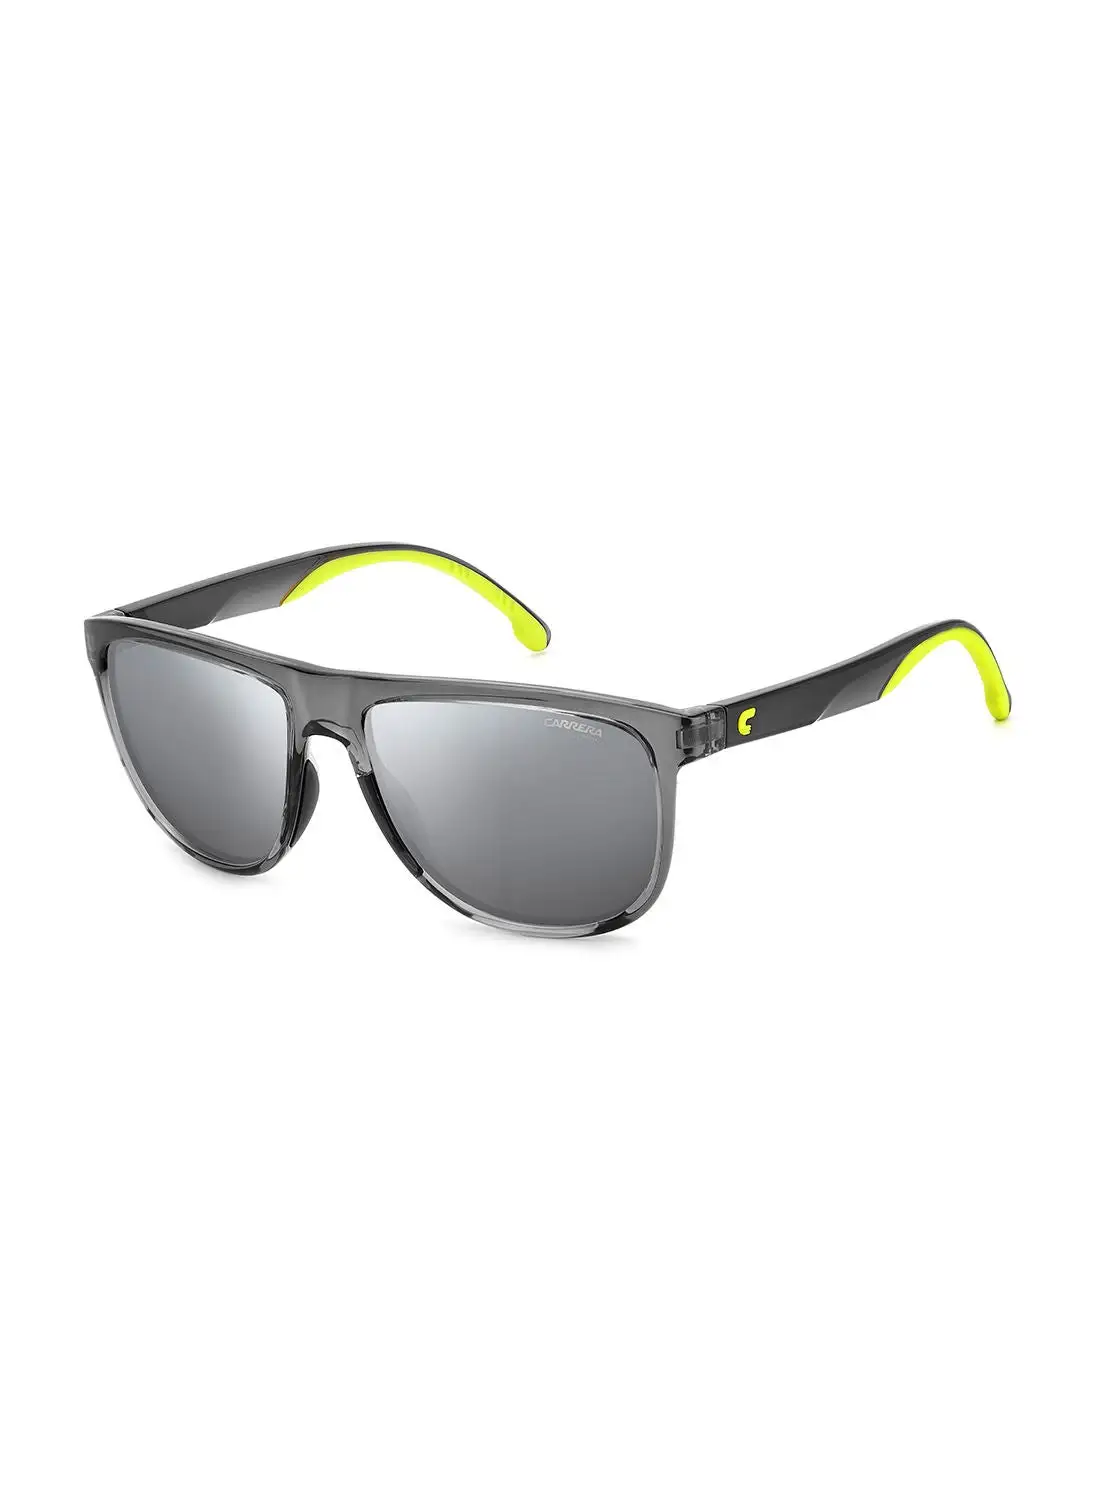 كاريرا نظارة شمسية للرجال للحماية من الأشعة فوق البنفسجية - Carrera 8059/S رمادي/أخضر 58 - مقاس العدسة: 58 ملم